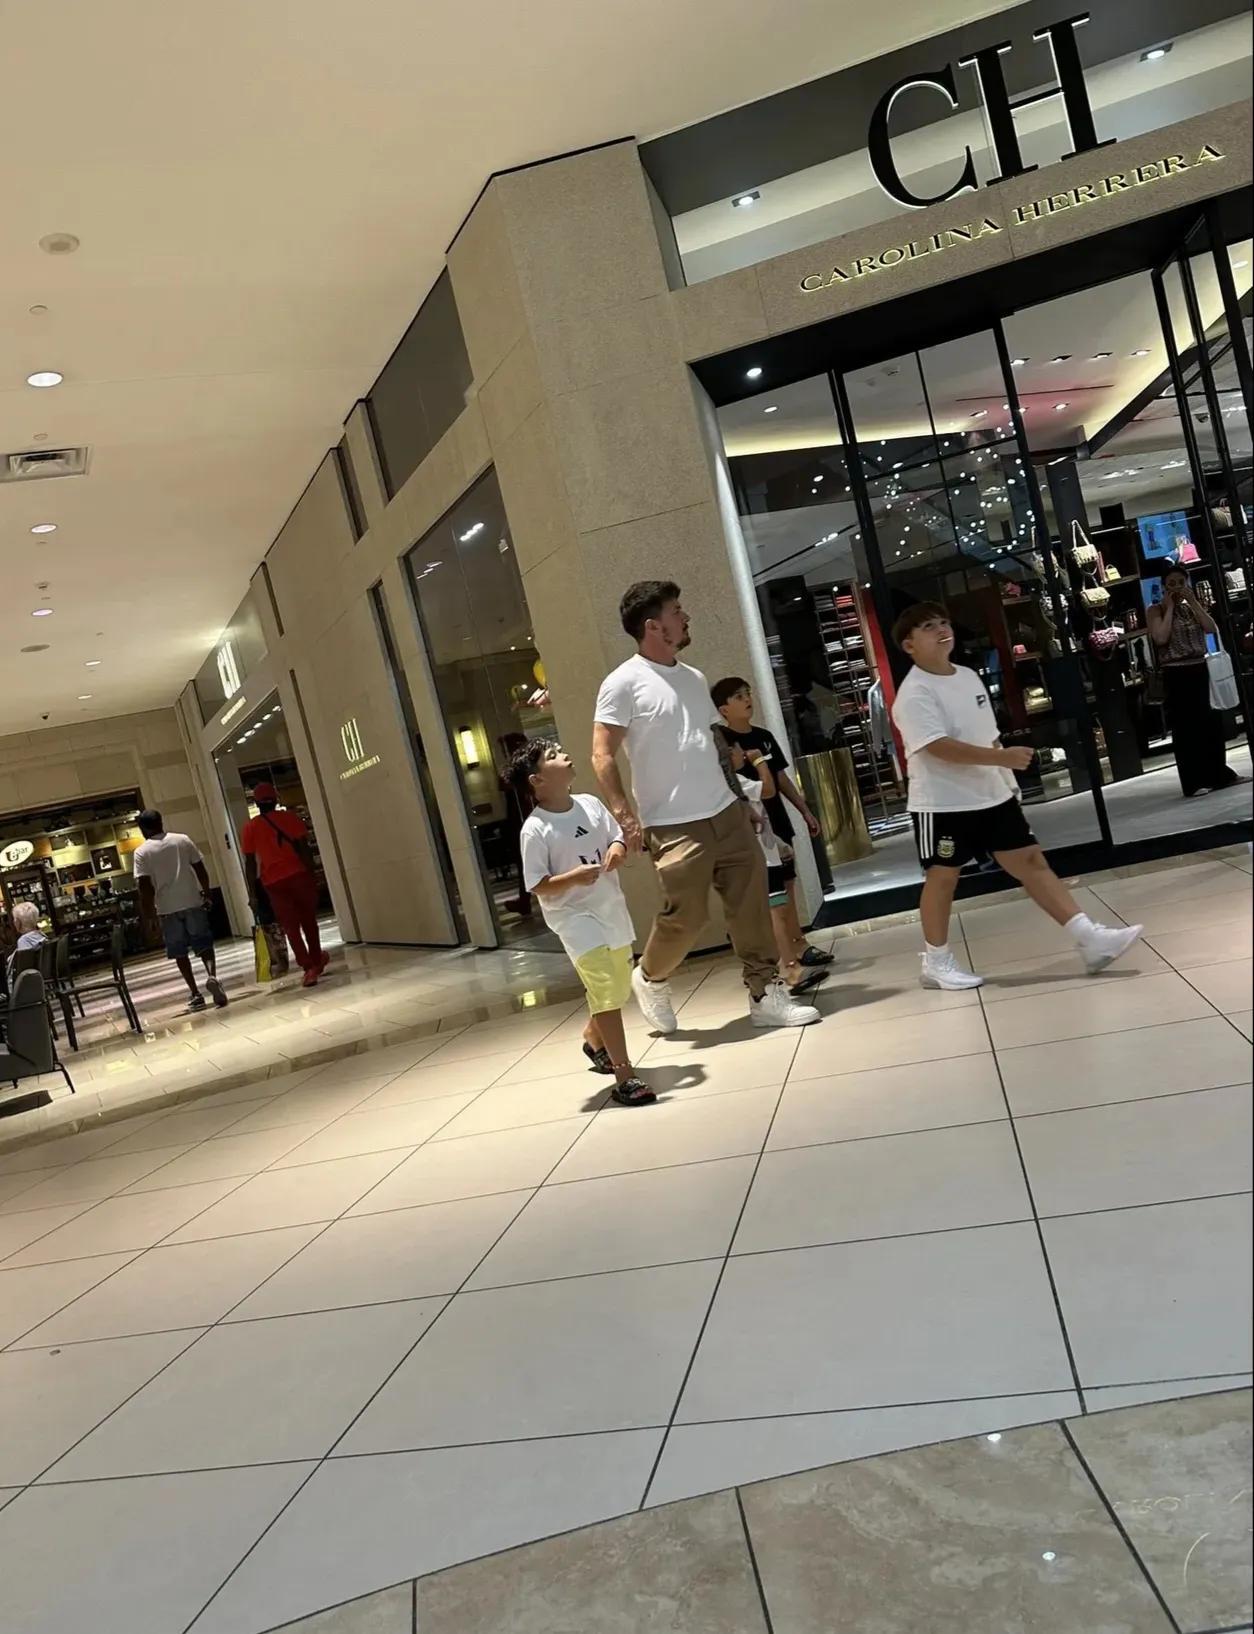 梅西的哥哥罗德里戈带着梅西的三个儿子和自己的儿子在迈阿密逛商场。
五个人悠哉游哉(1)